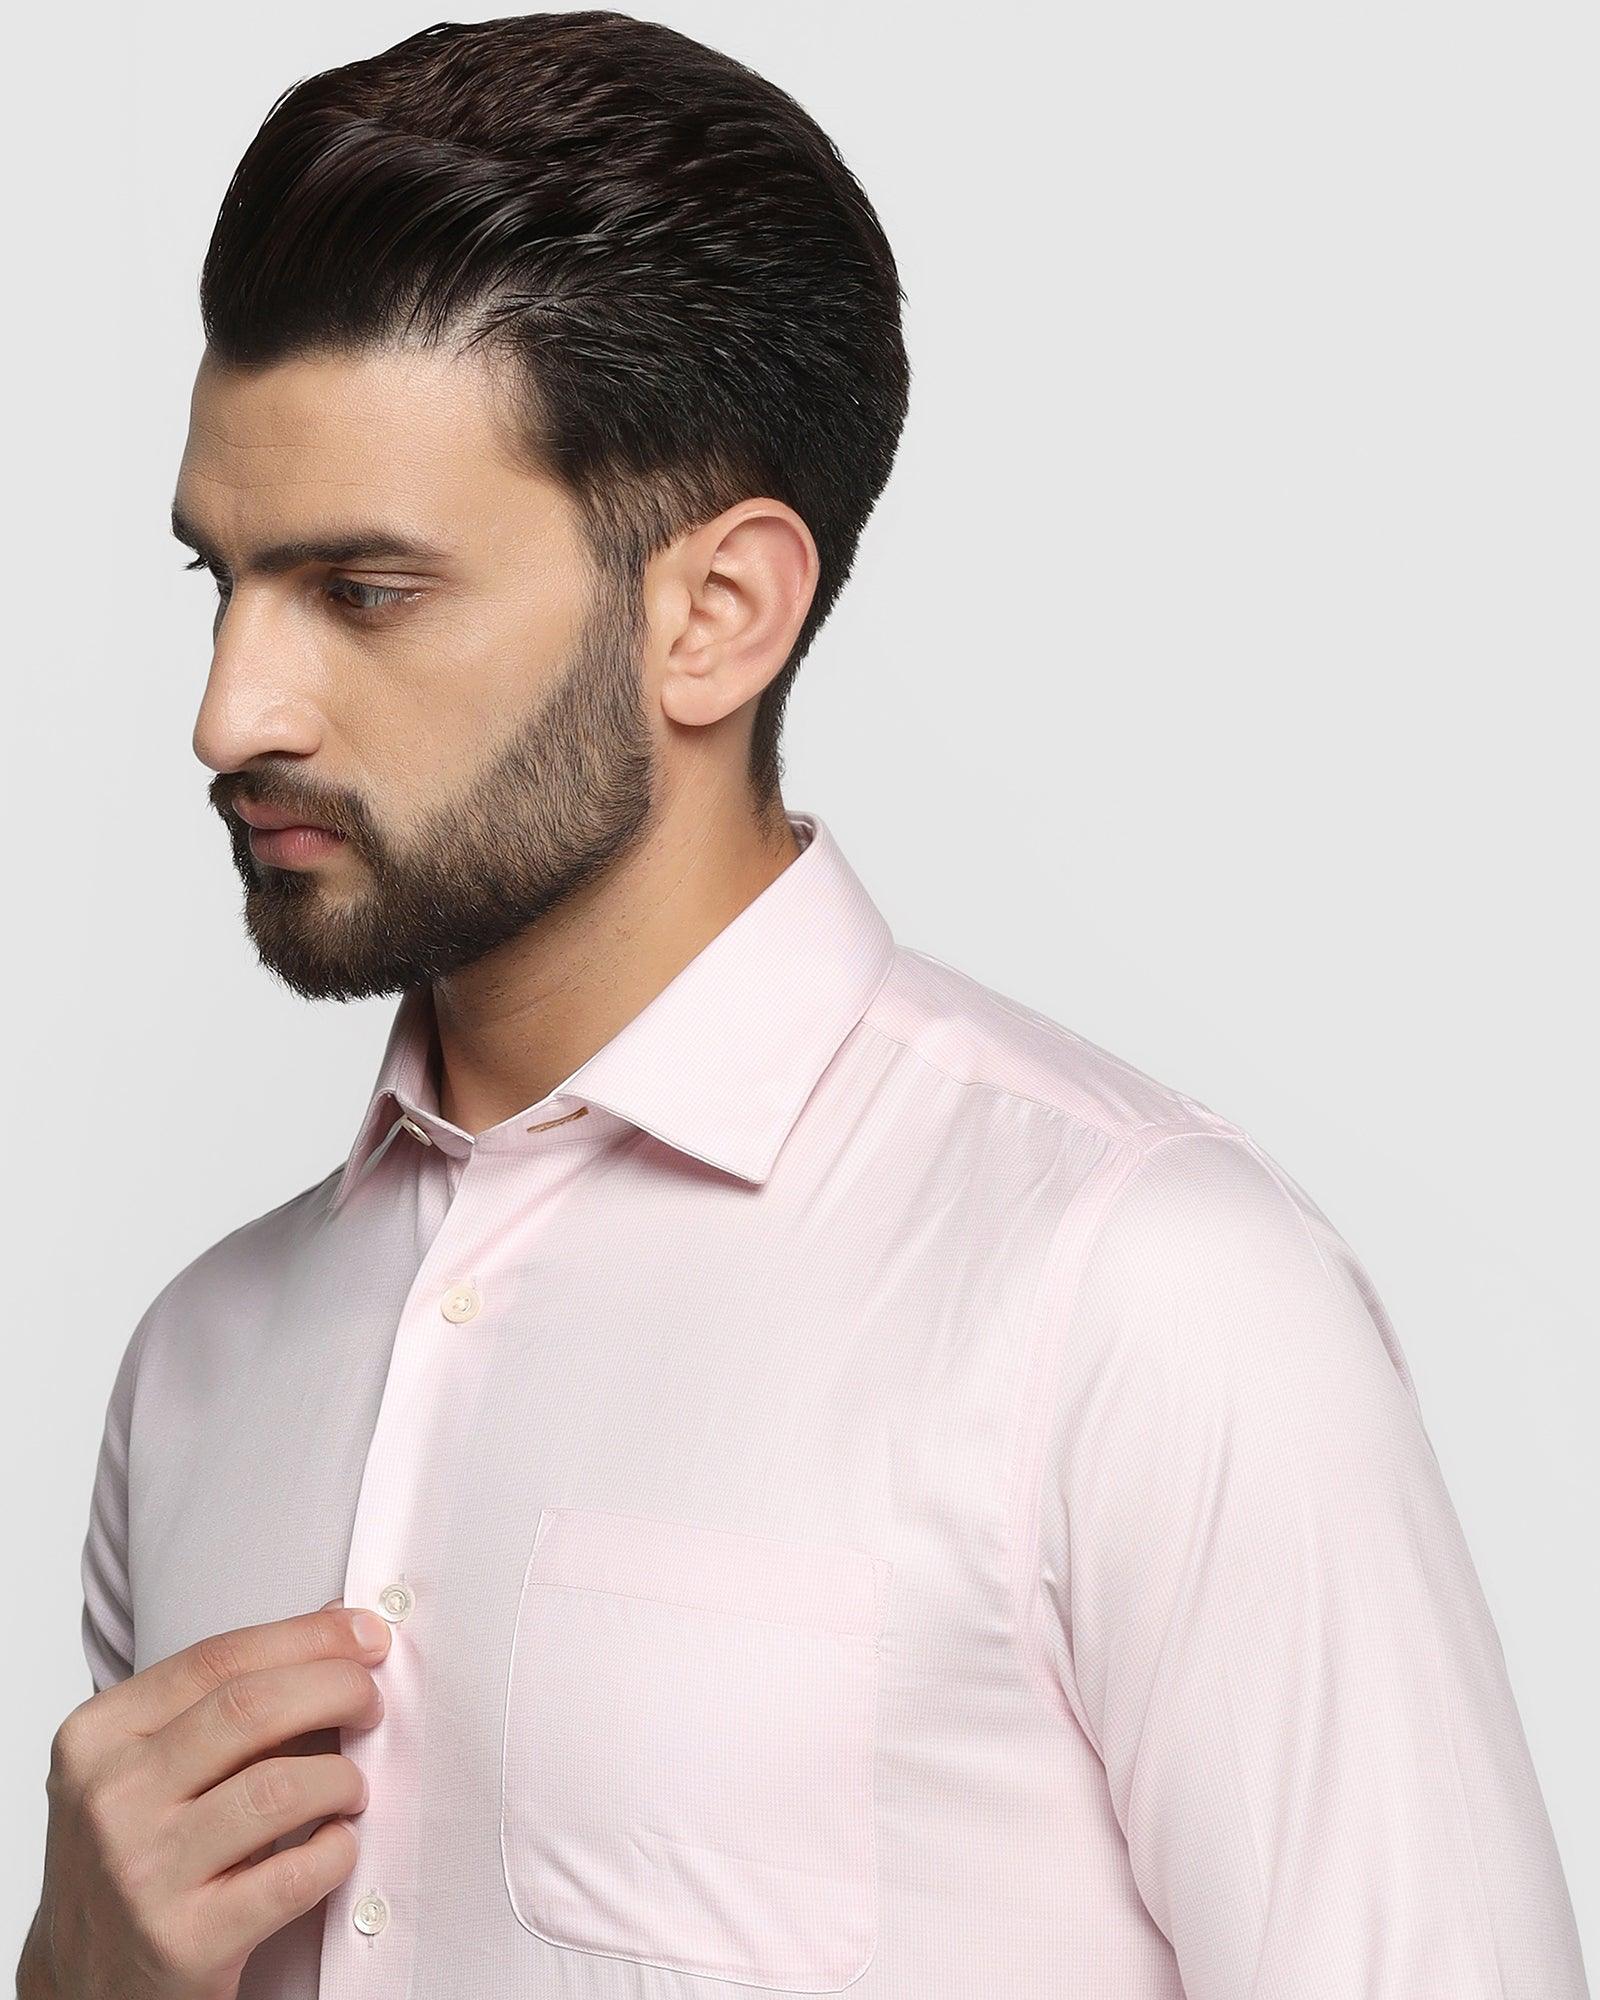 Luxe Formal Light Pink Textured Shirt - Bulova